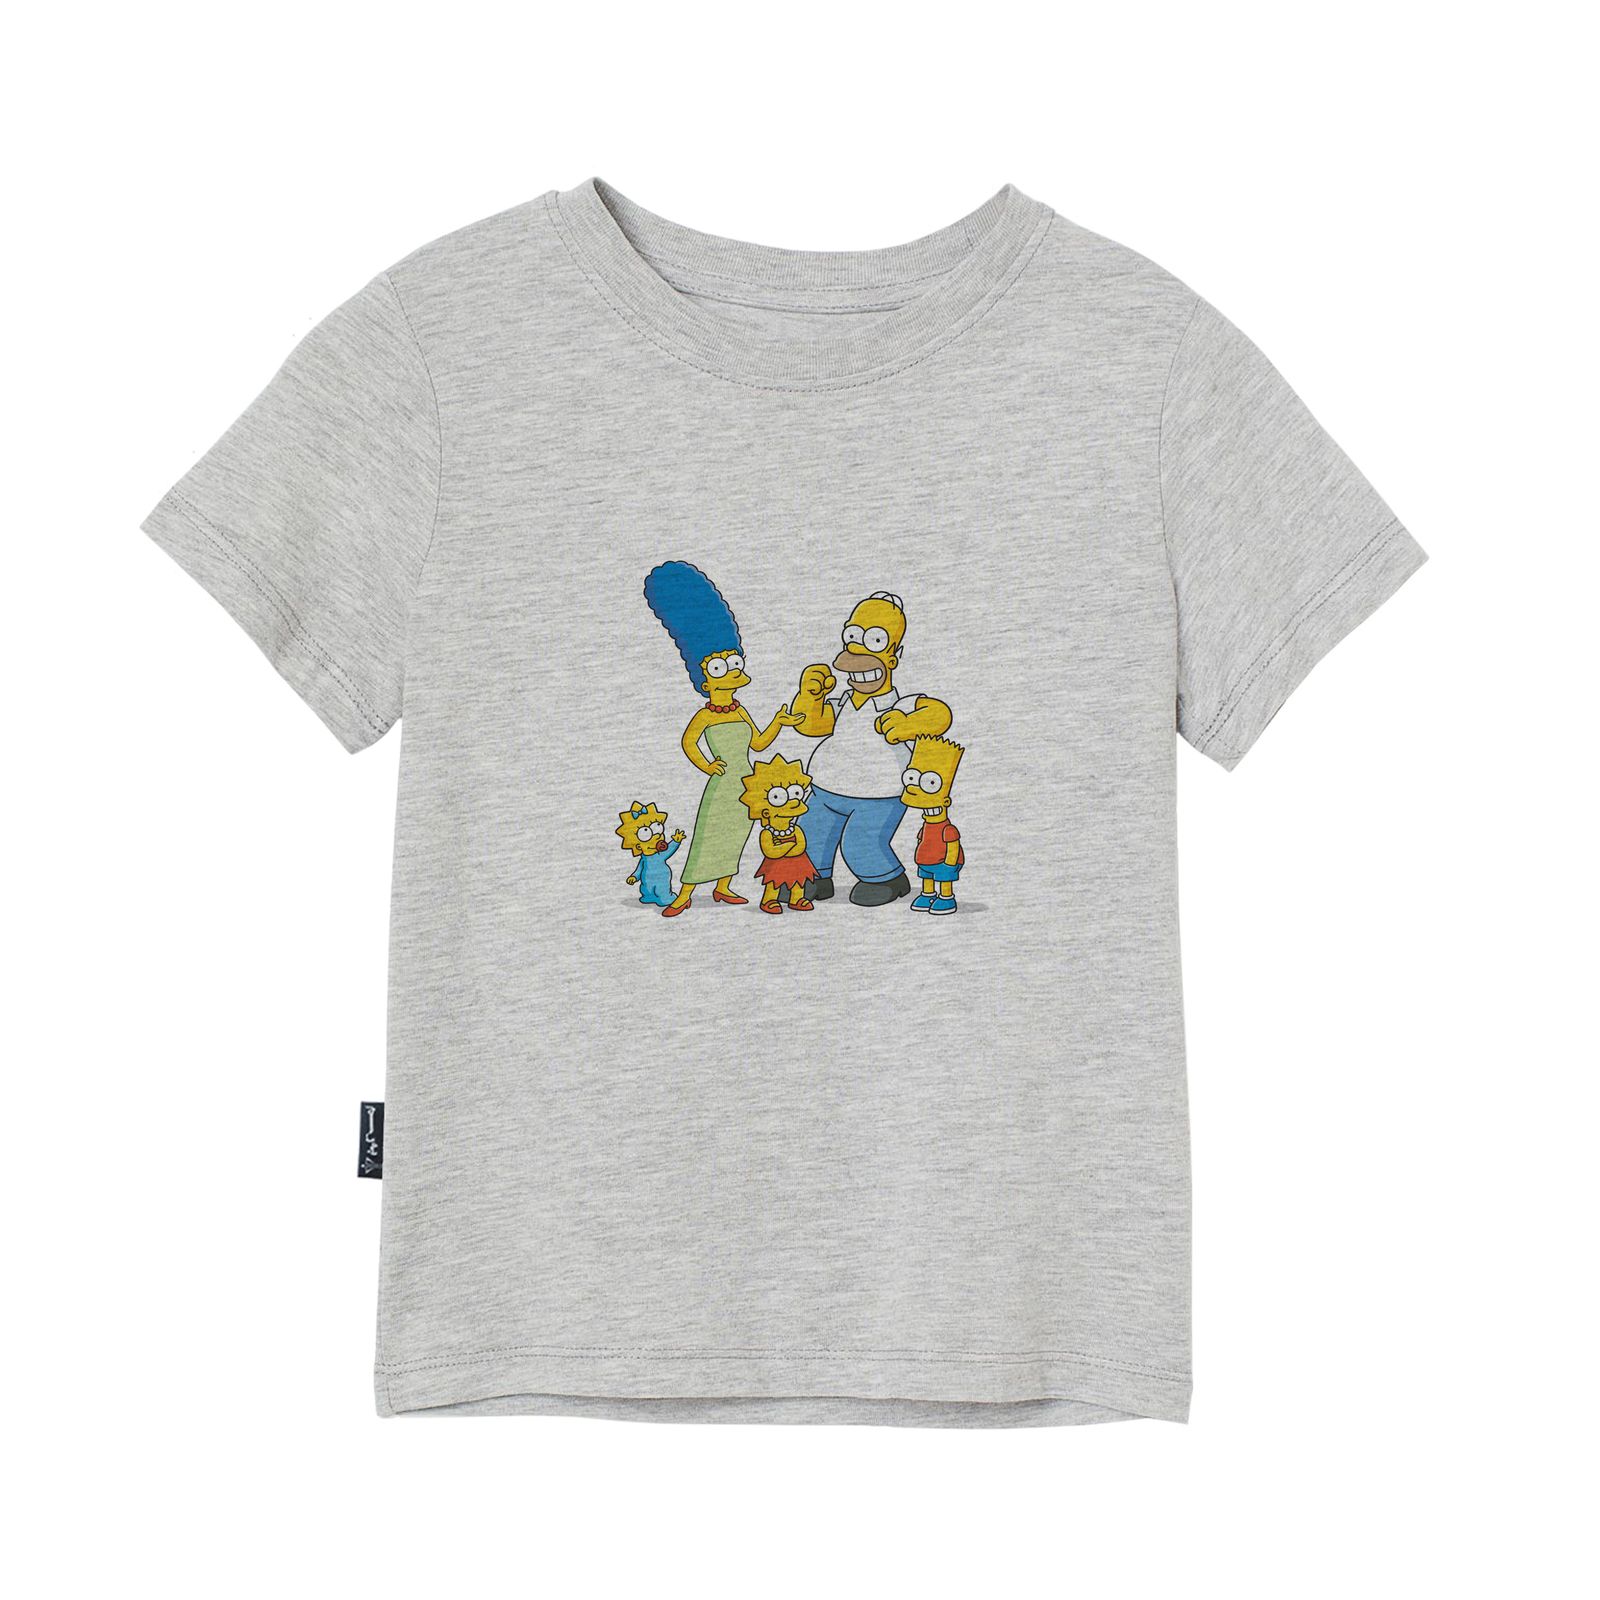 تی شرت آستین کوتاه بچگانه به رسم مدل سیمپسون ها کد 1131 -  - 1